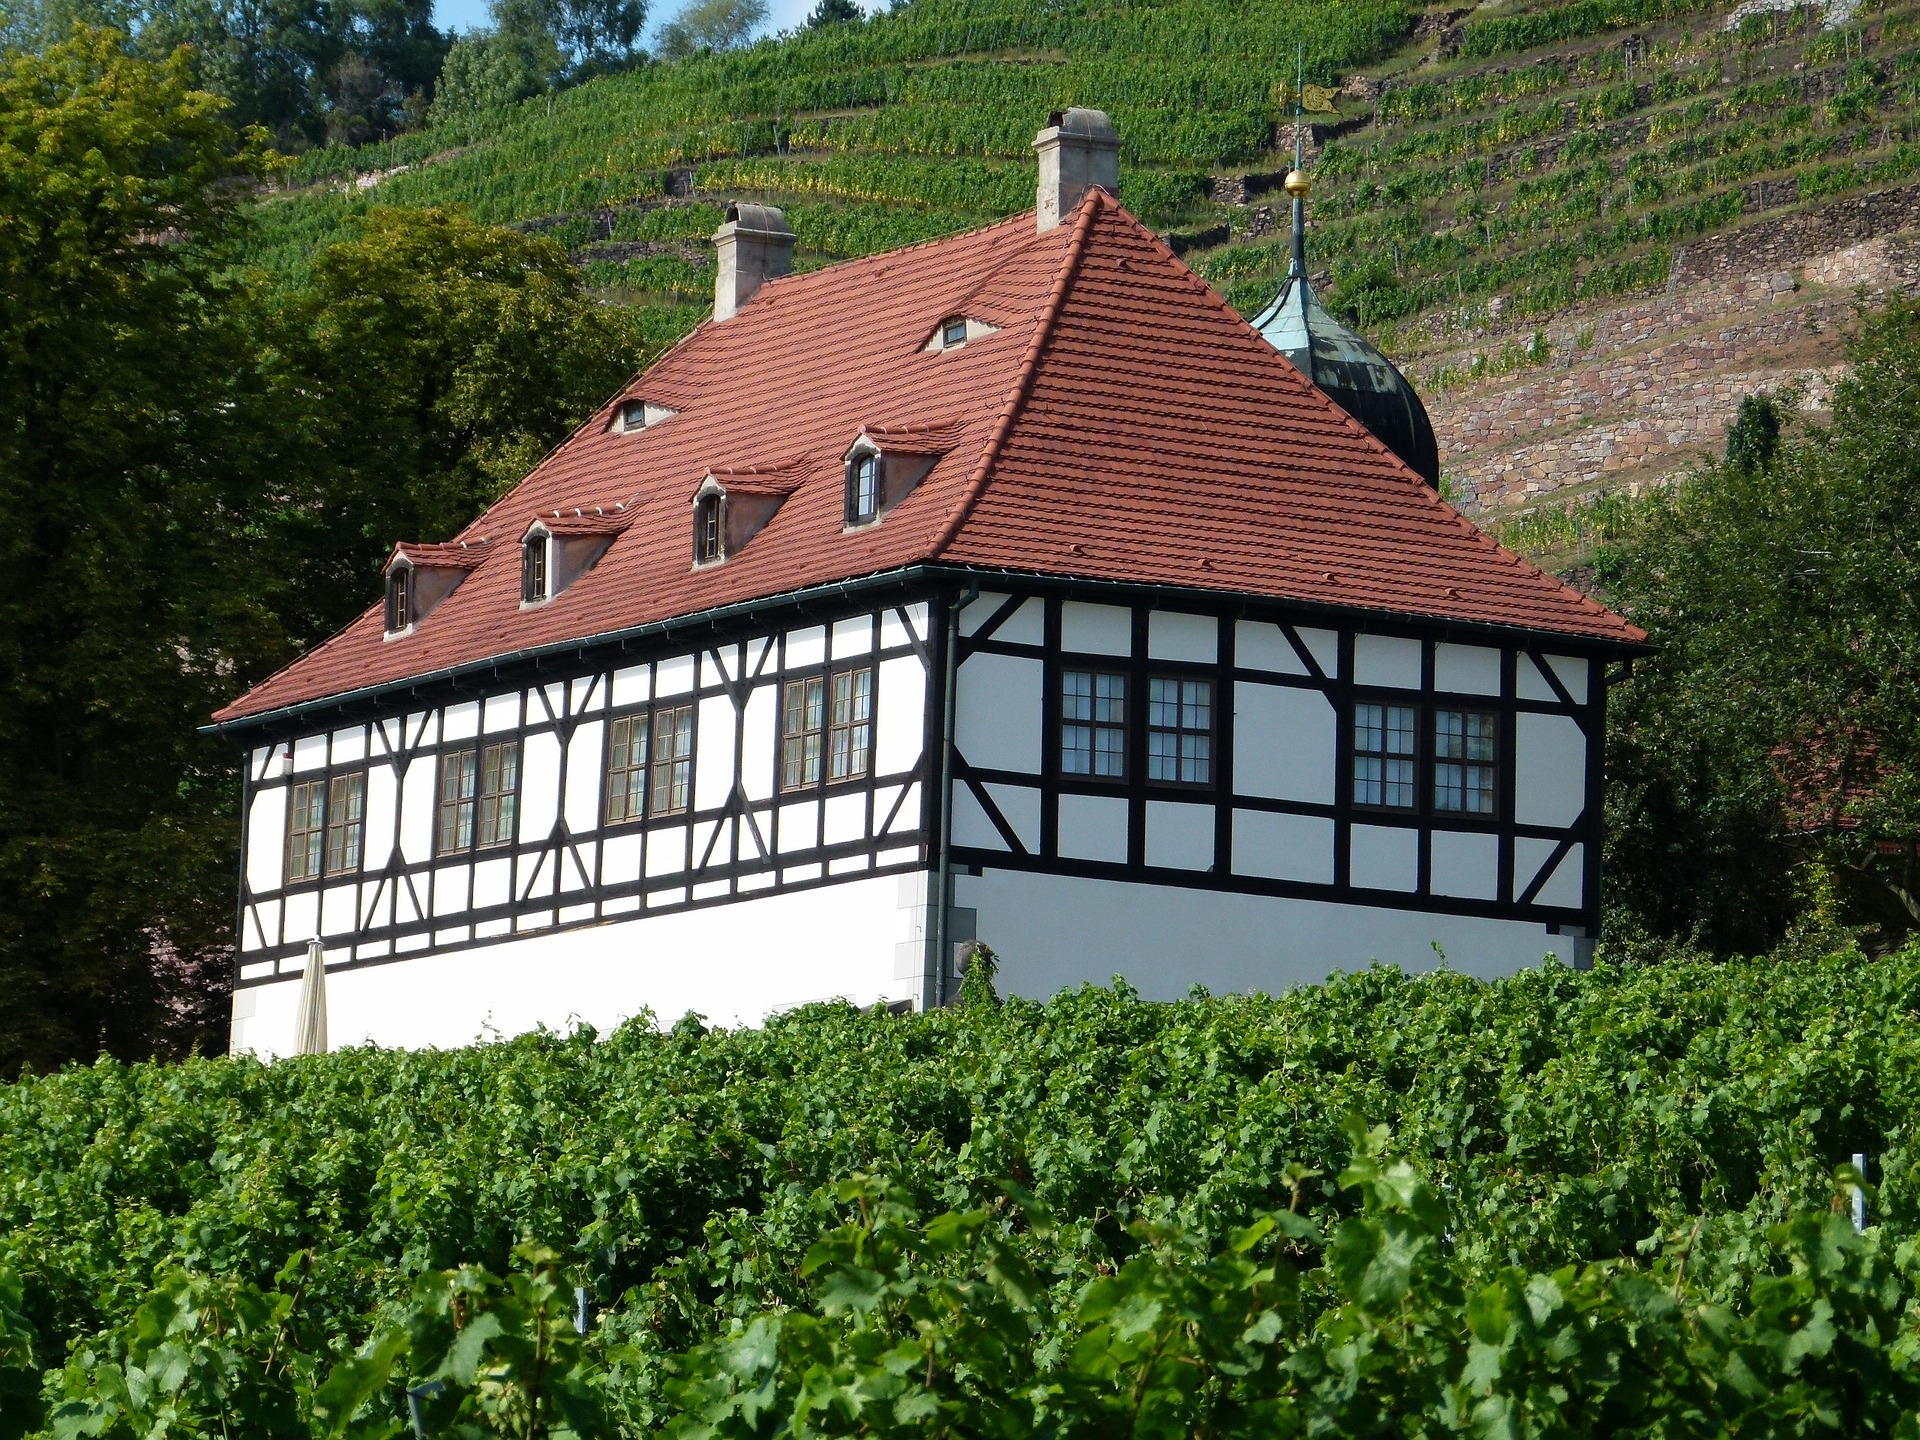 Haus in den Radebeuler Weinhängen